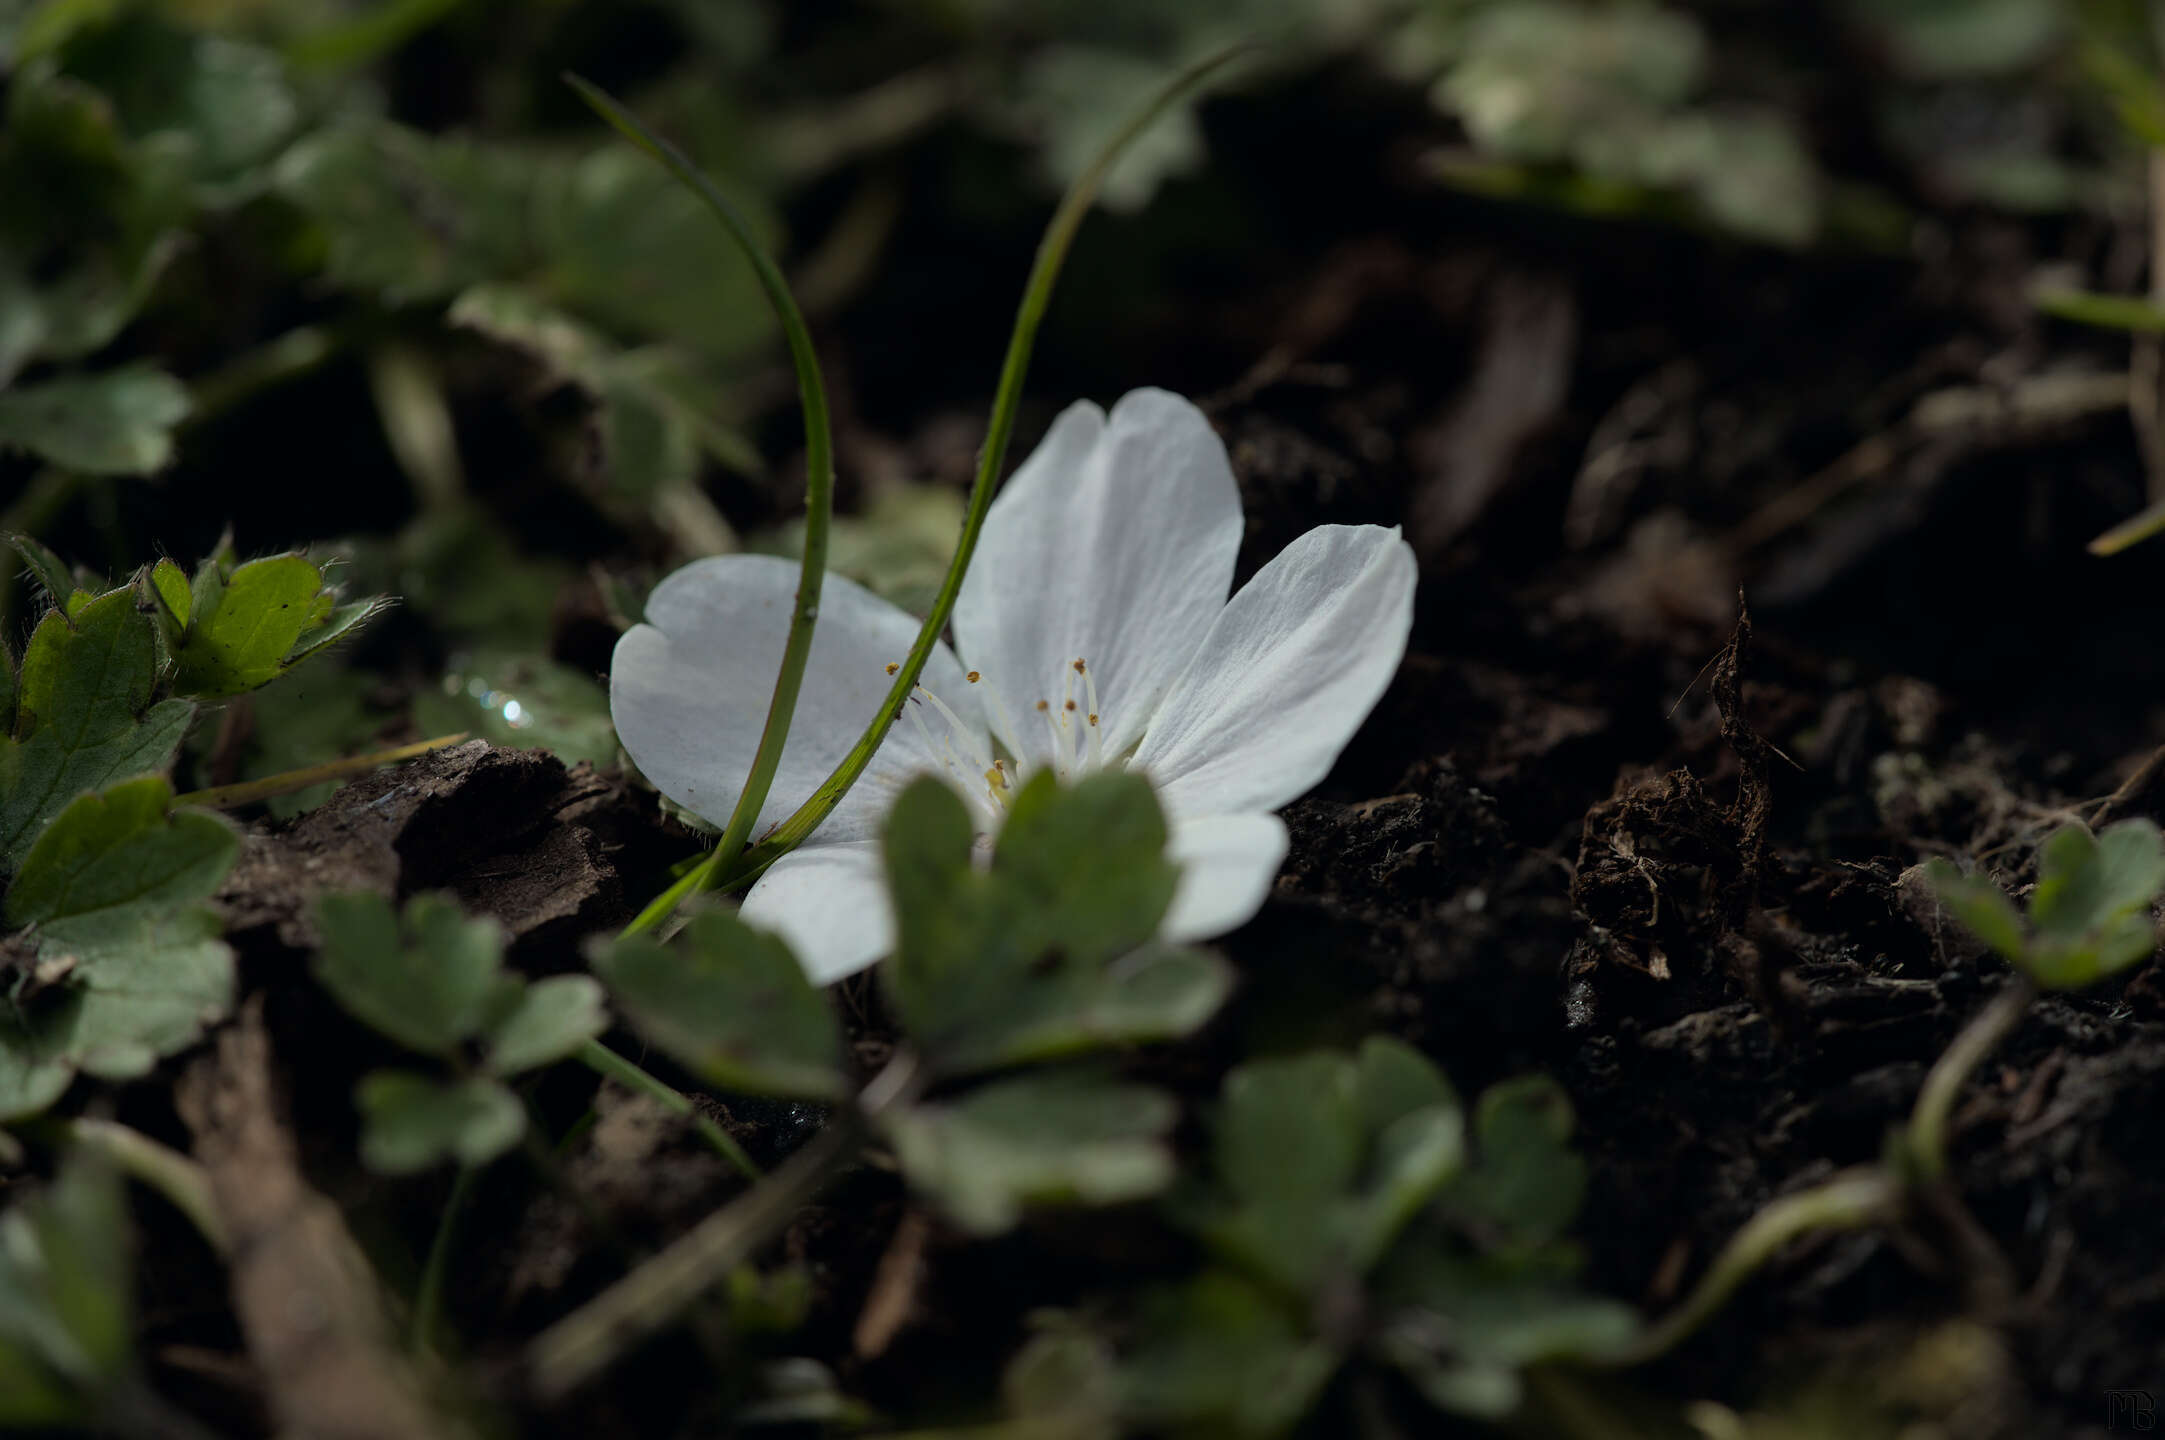 Single white flower on ground in grass